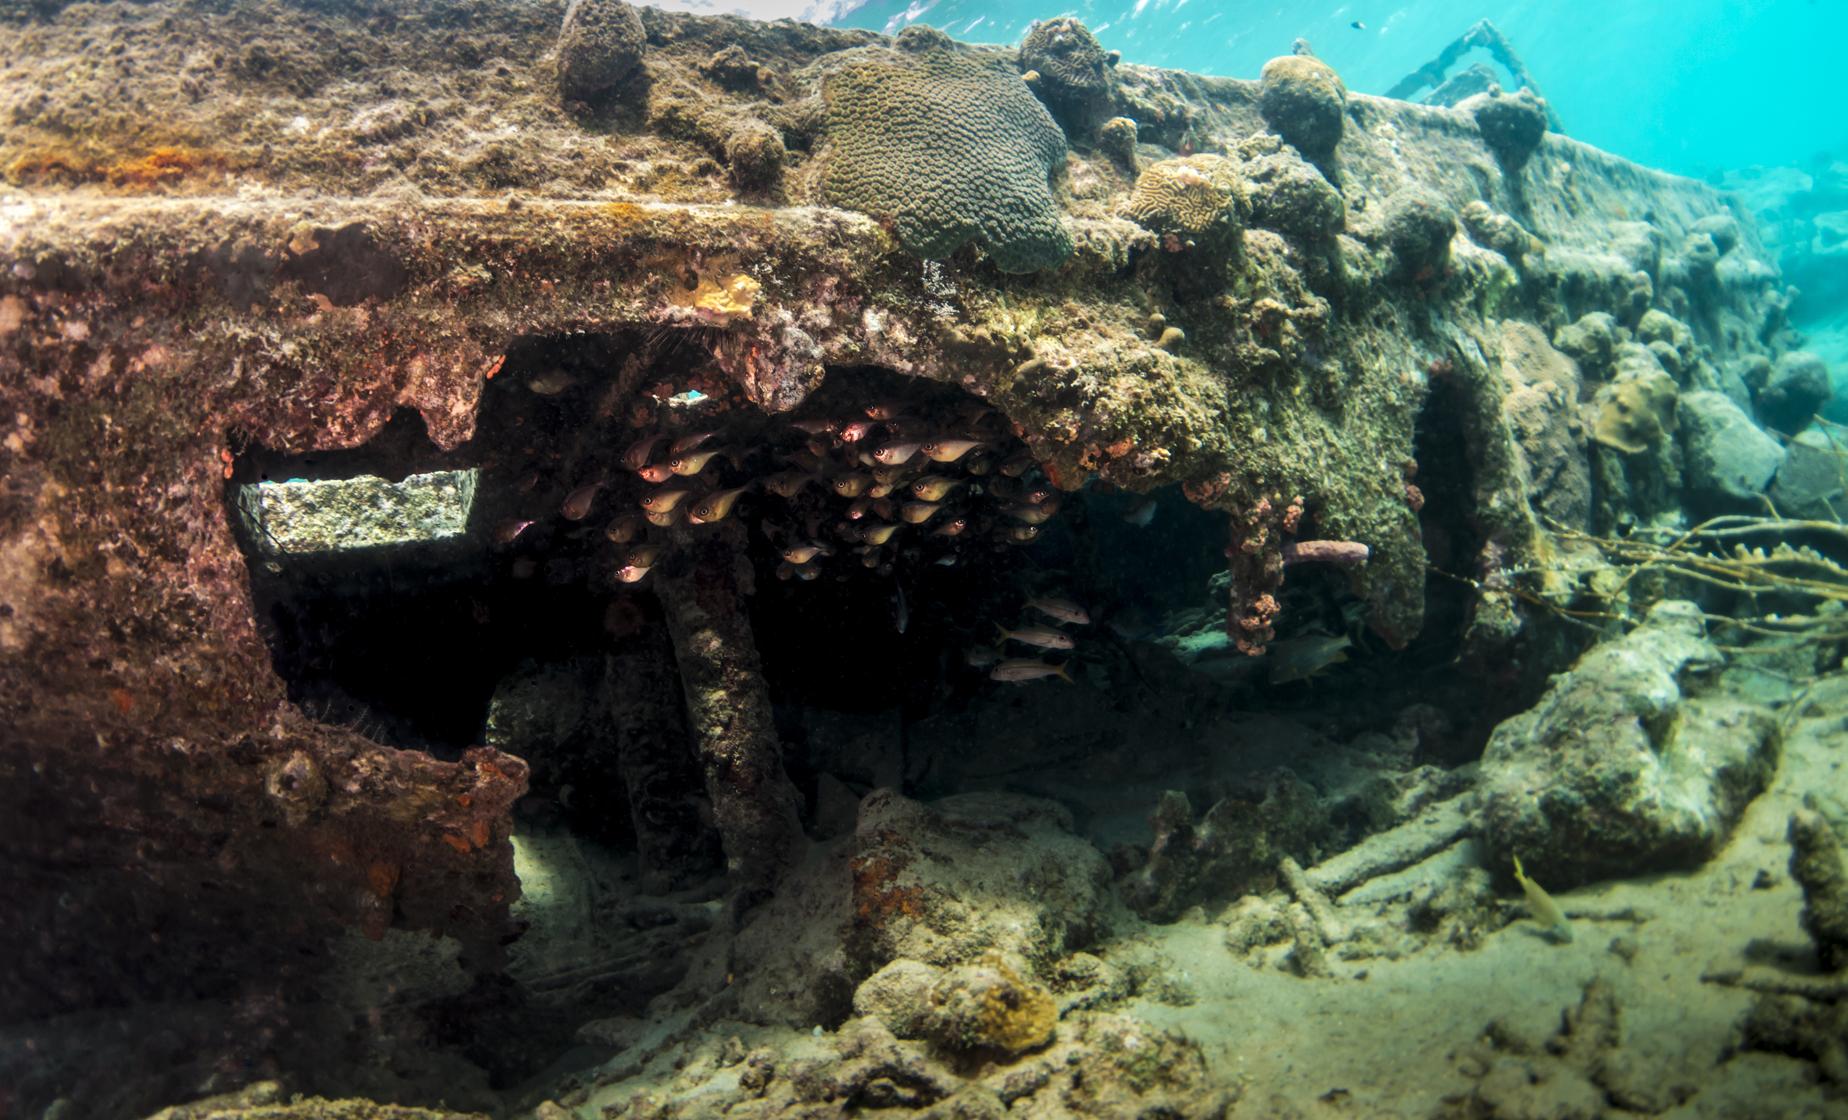 Sunken Tugboat and Reef Snorkel in Curacao Fort Beekenburg